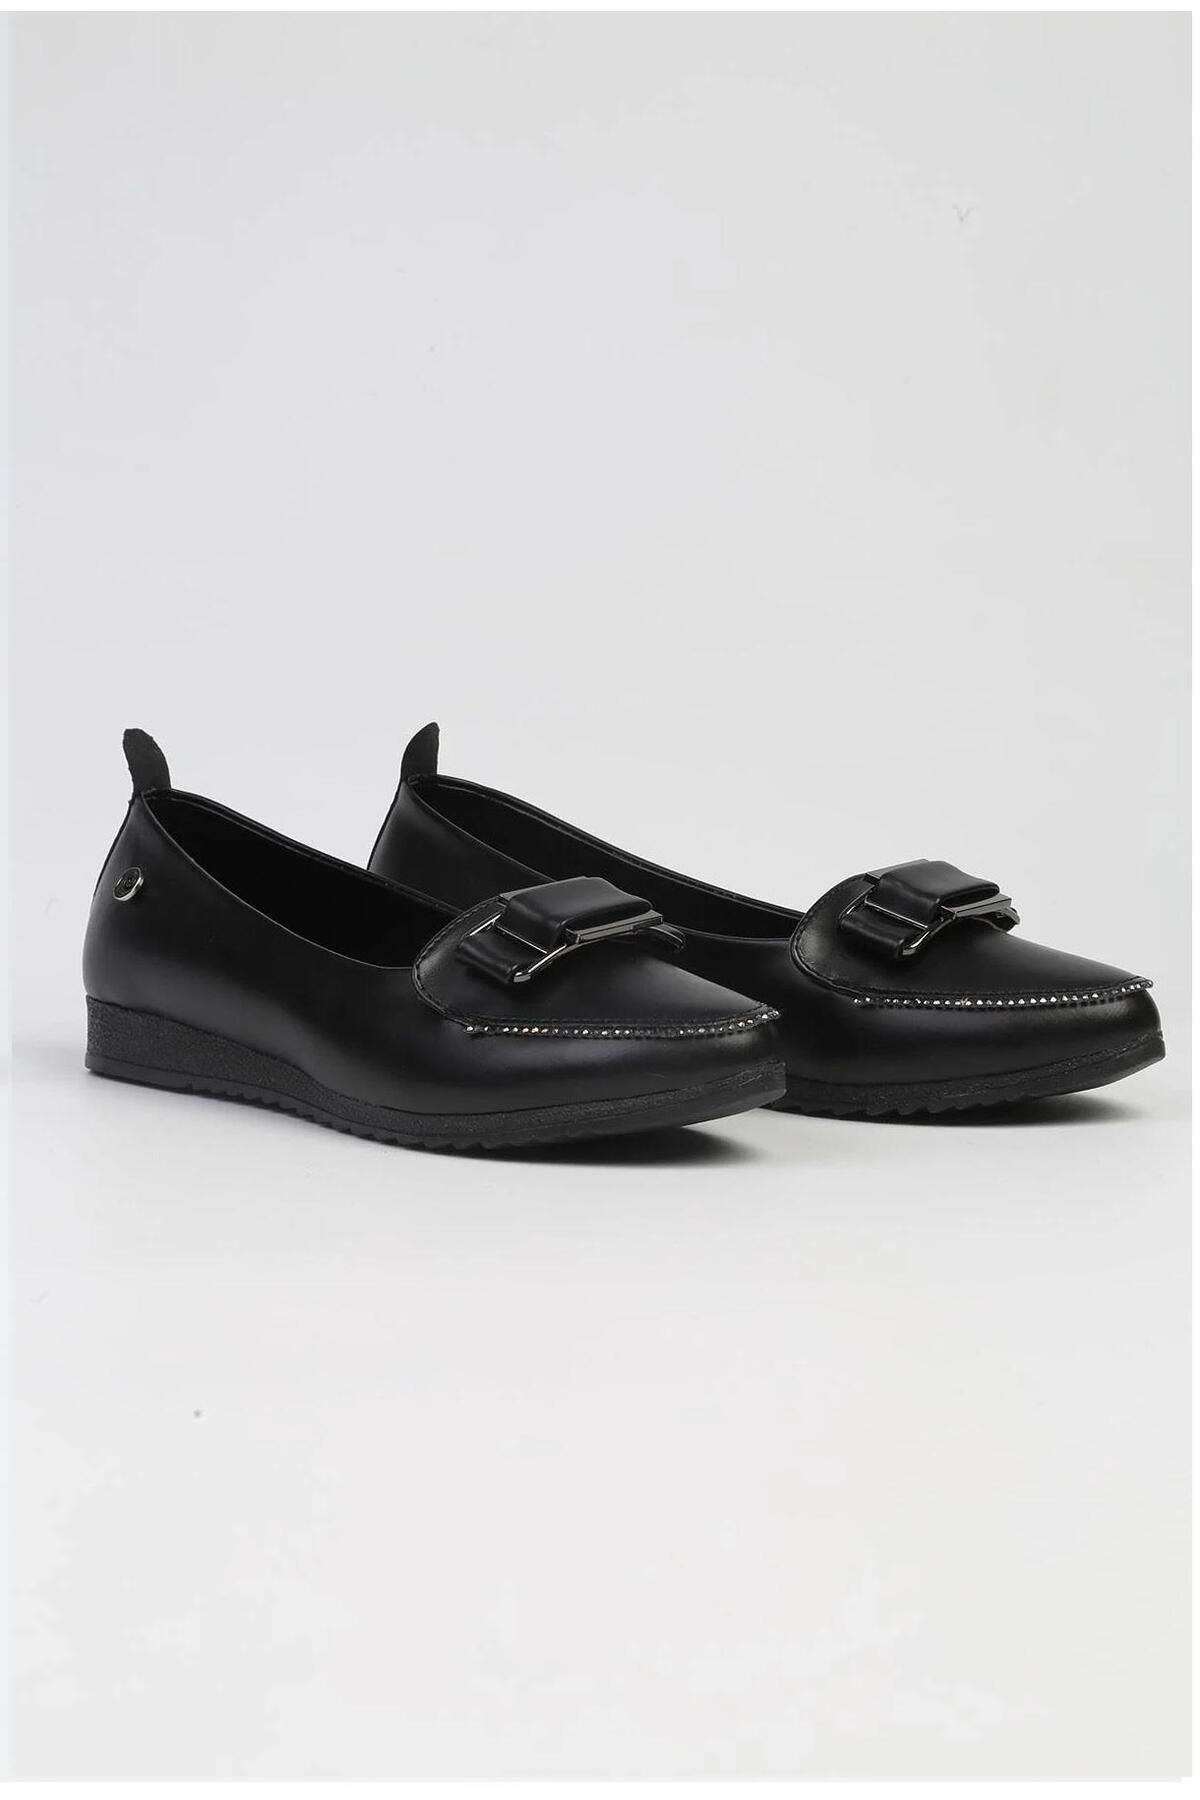 Pierre Cardin PC-53020 Siyah Kadın Günlük Ayakkabı